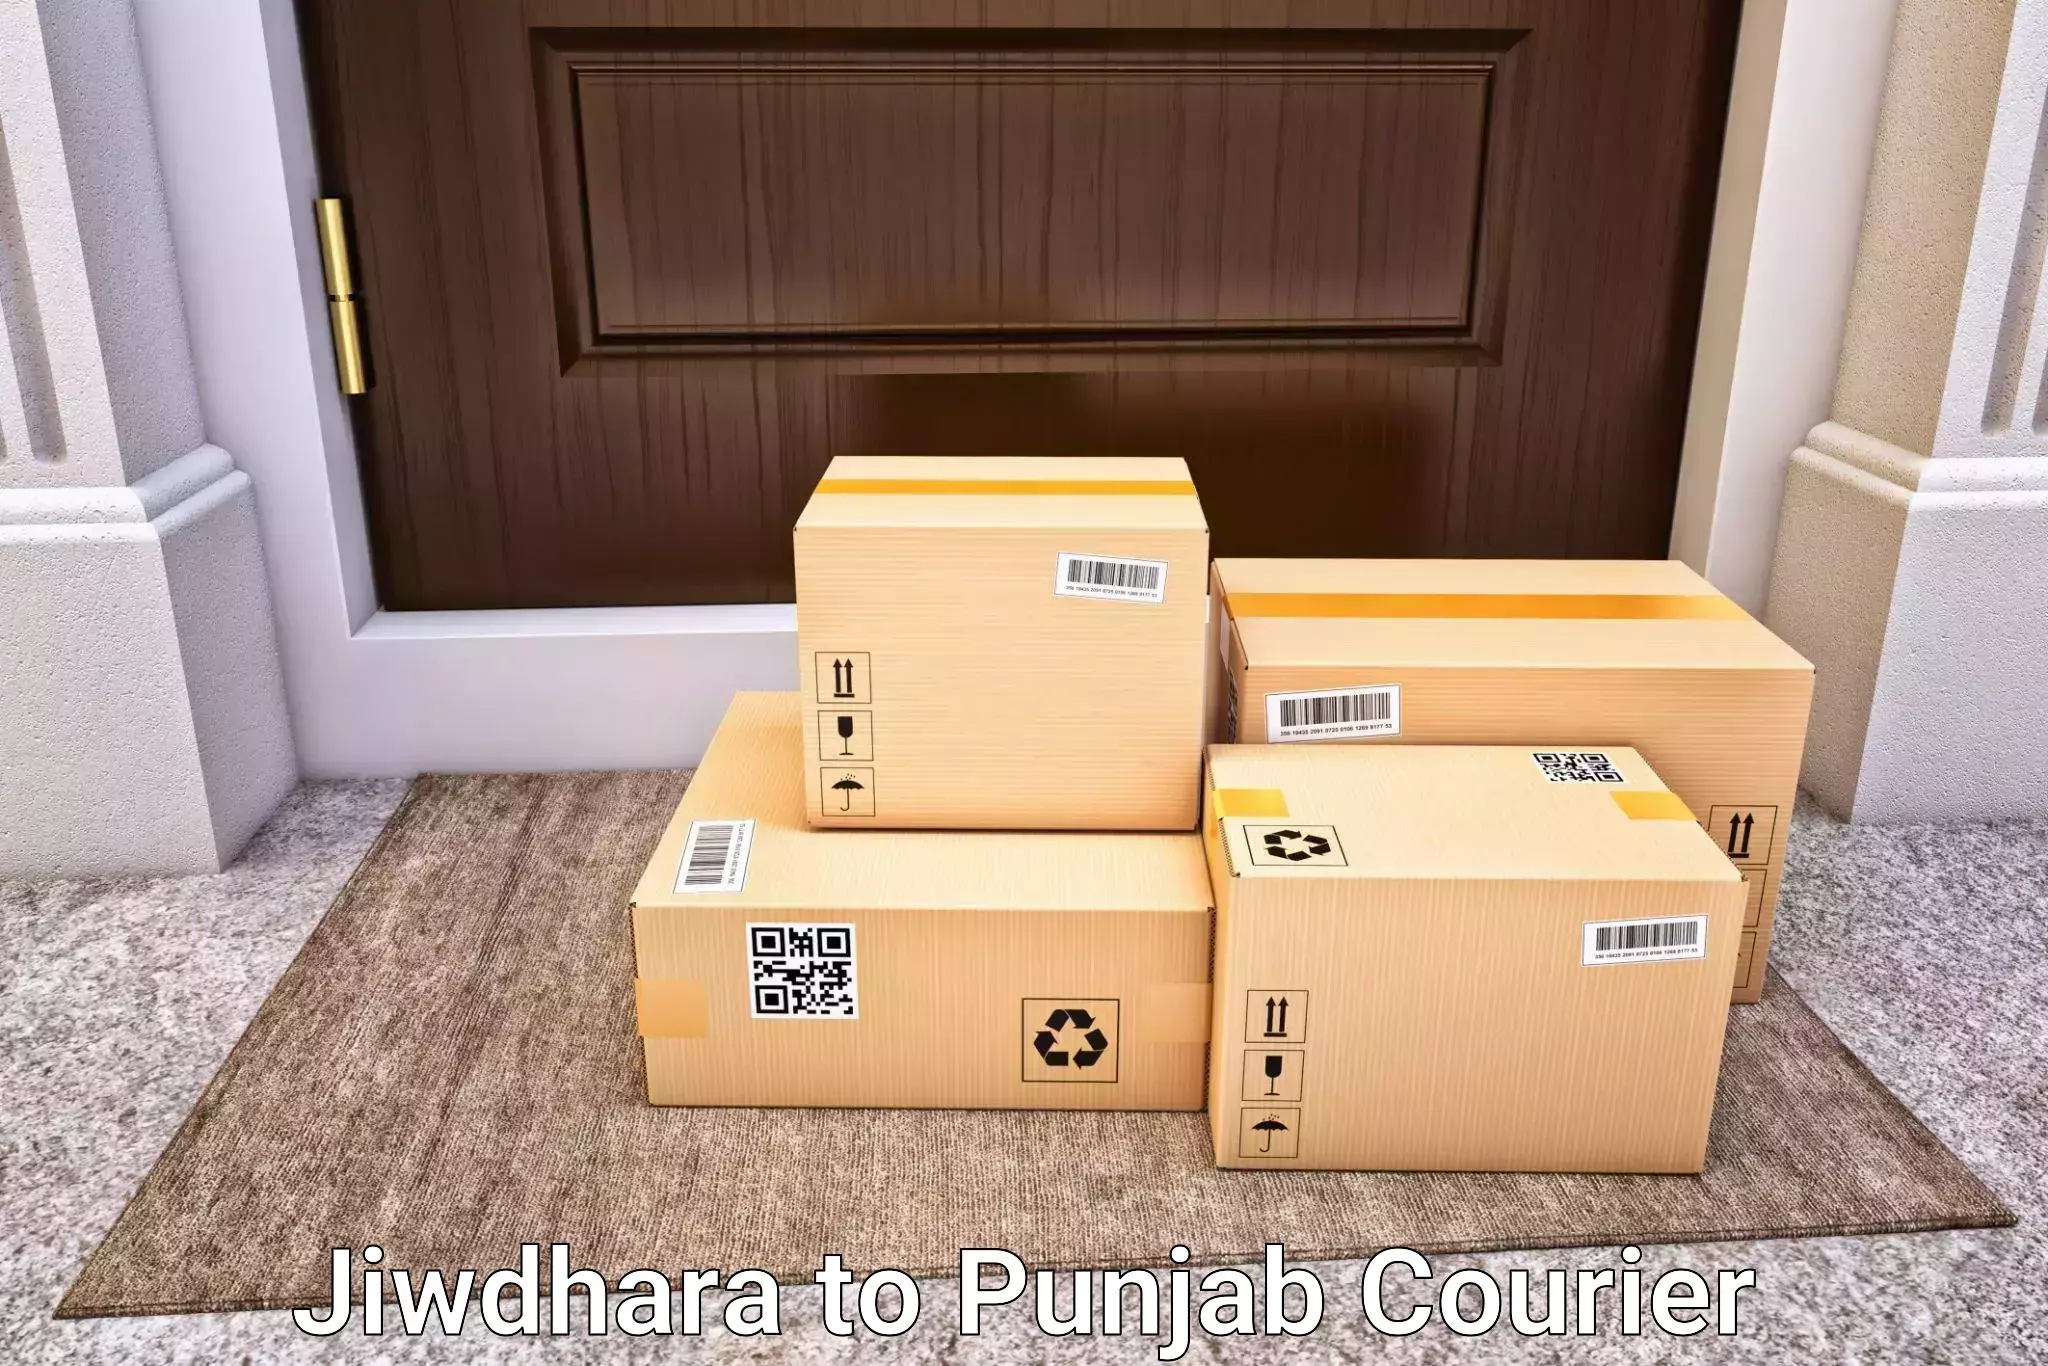 Premium luggage delivery Jiwdhara to Talwara